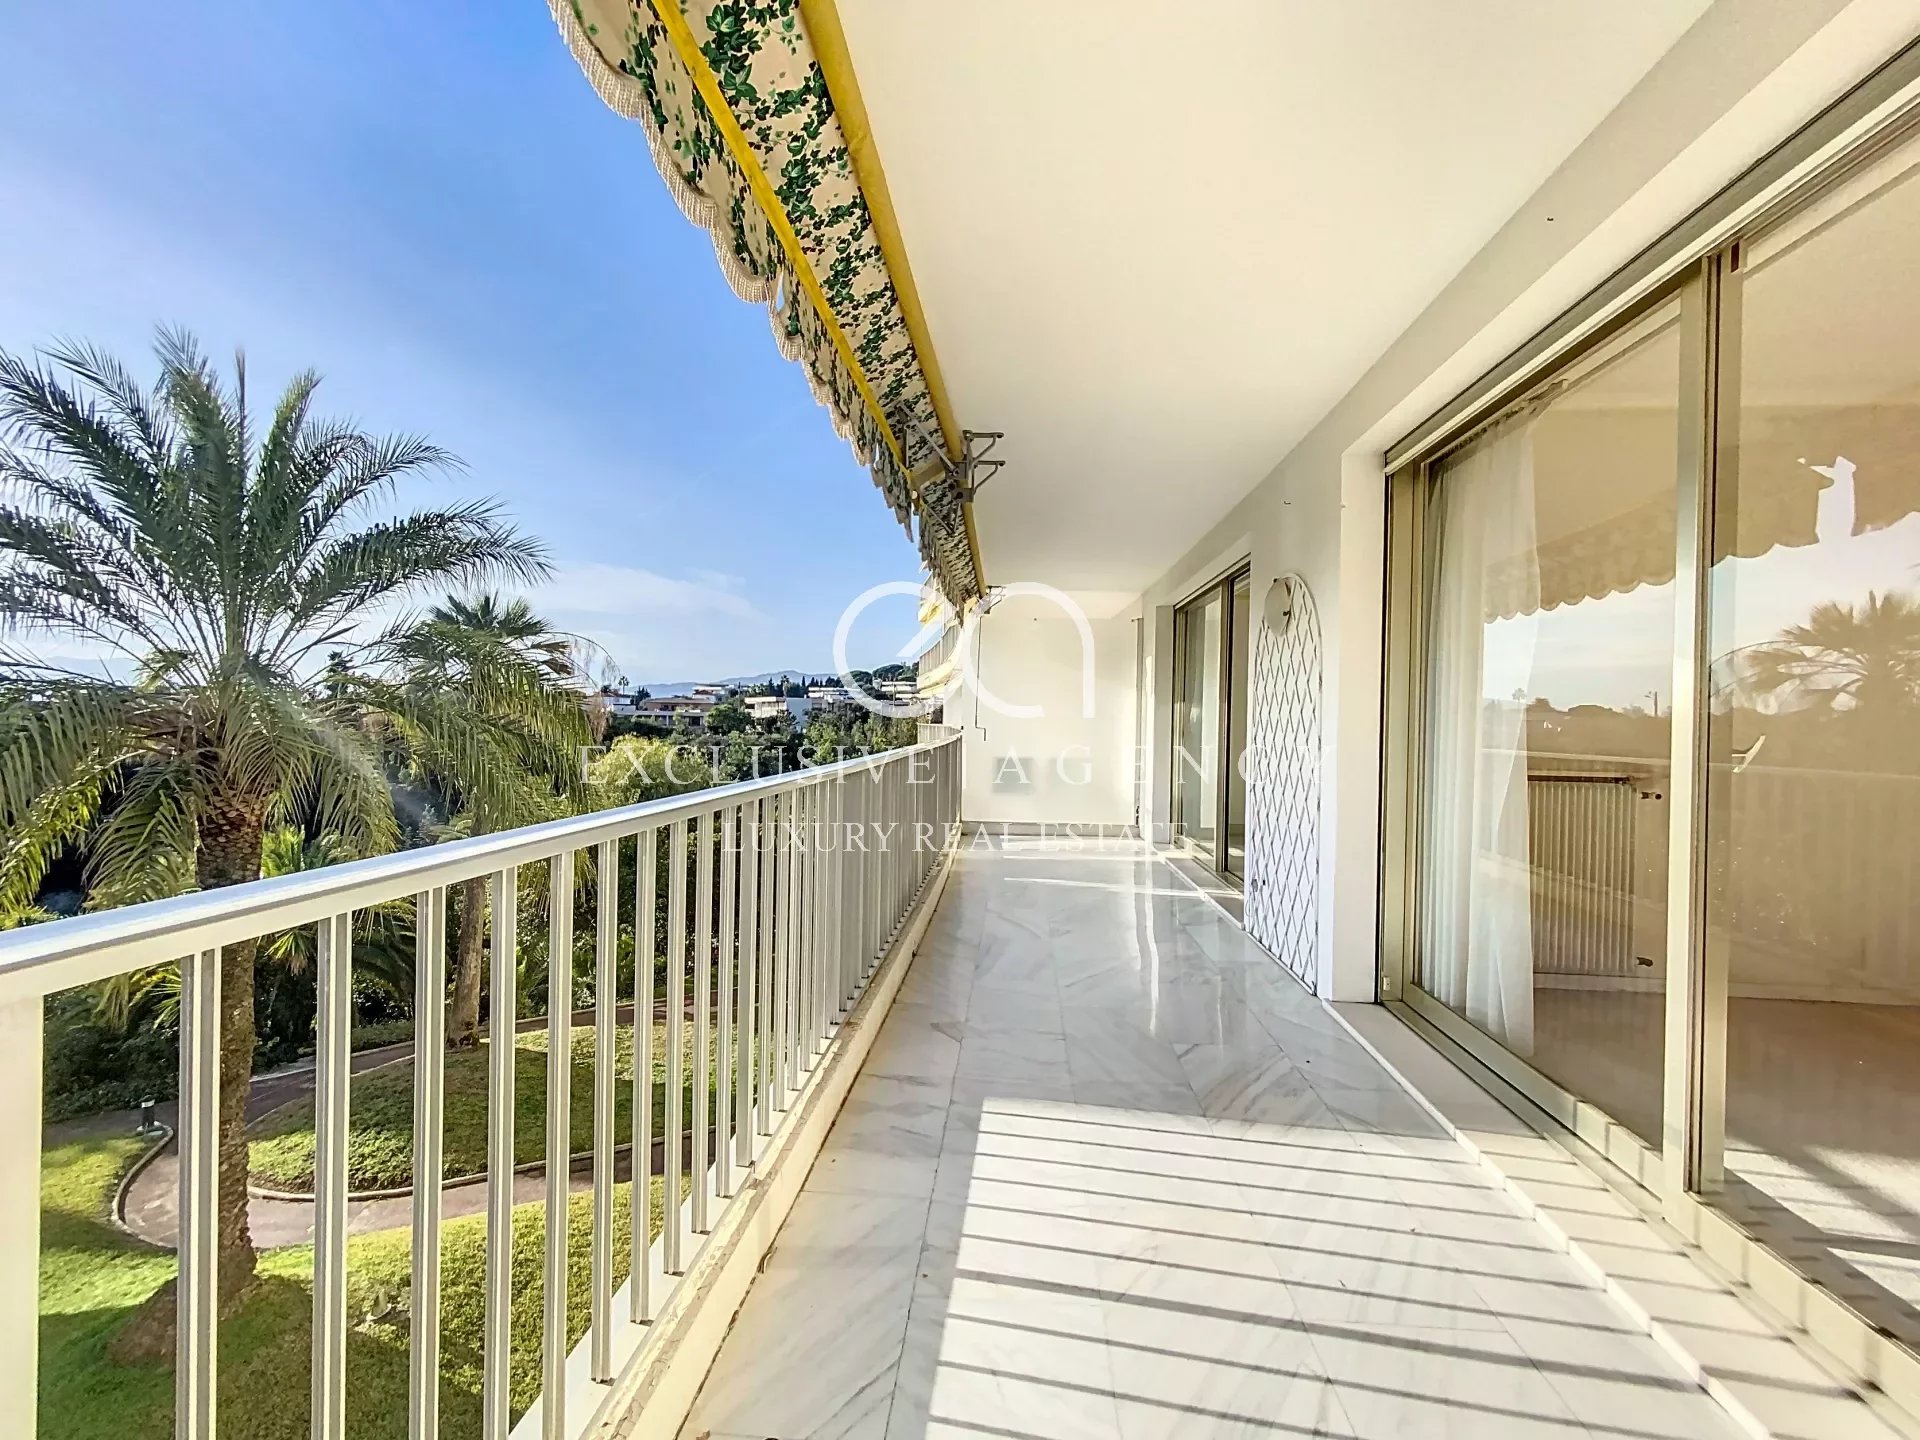 Verkoop Cannes 4 kamers 118m² met terras en zeezicht